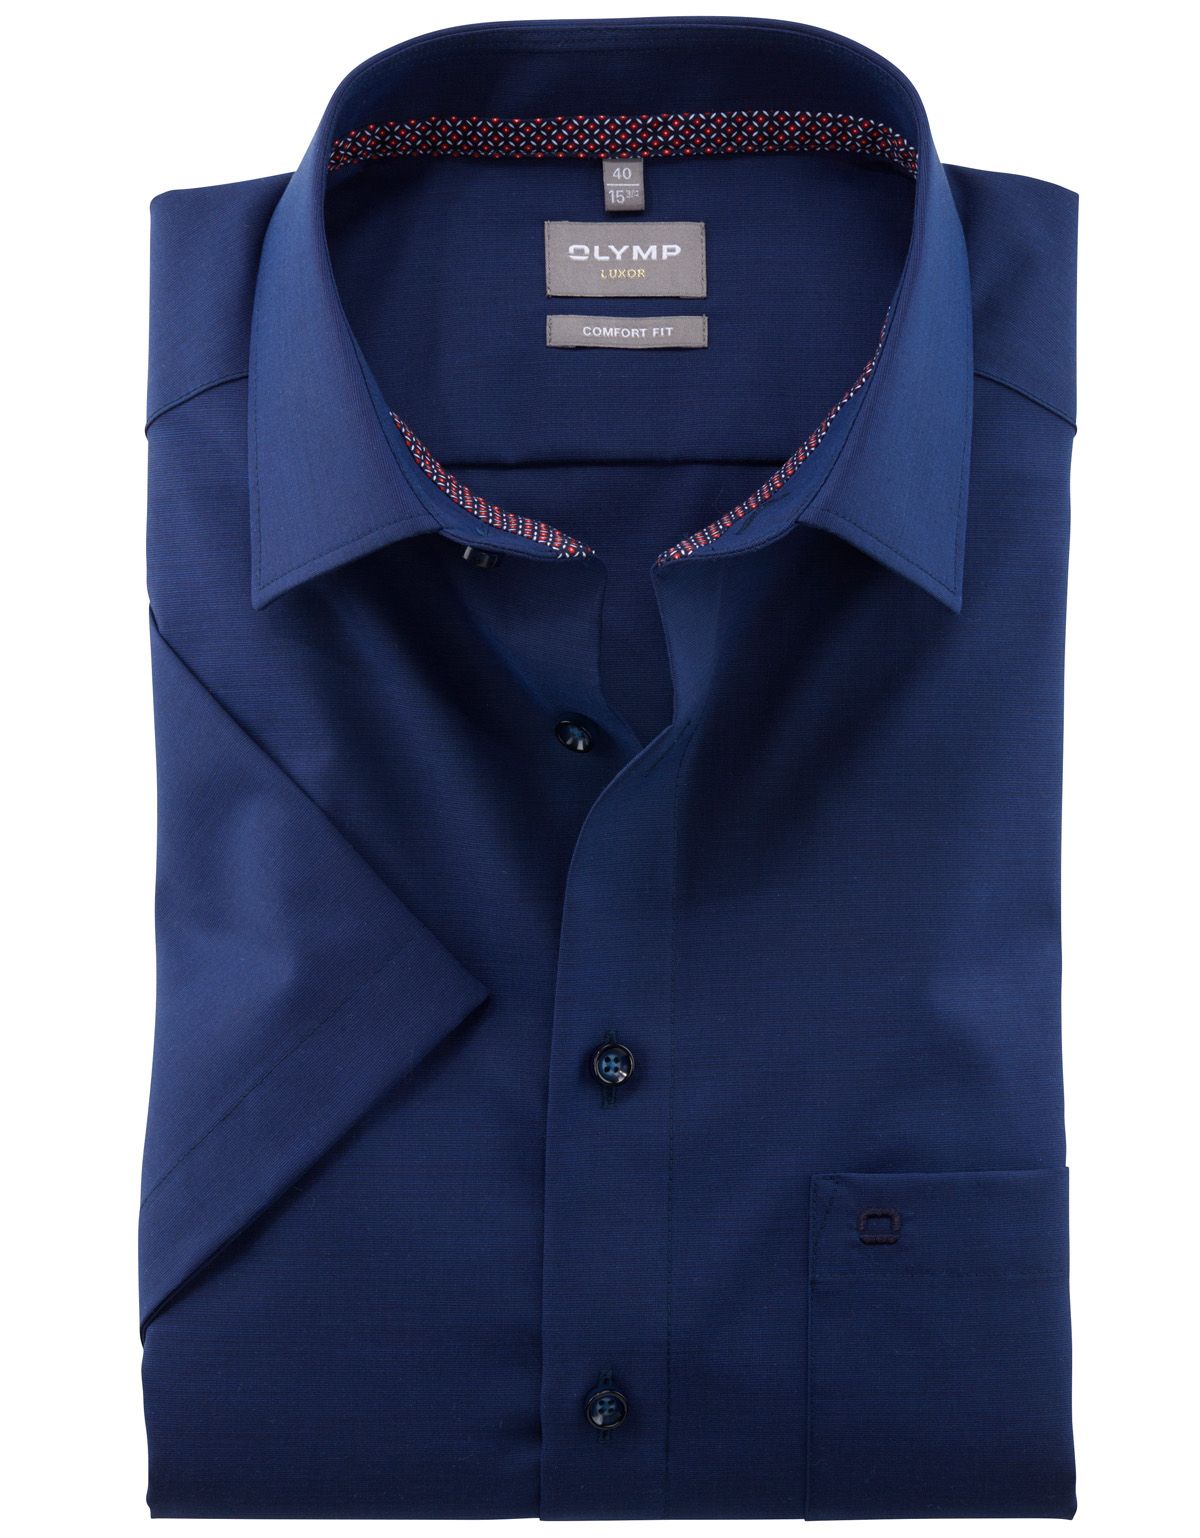 Рубашка мужская классическая OLYMP Luxor, фактурная ткань, прямой крой[СИНИЙ]